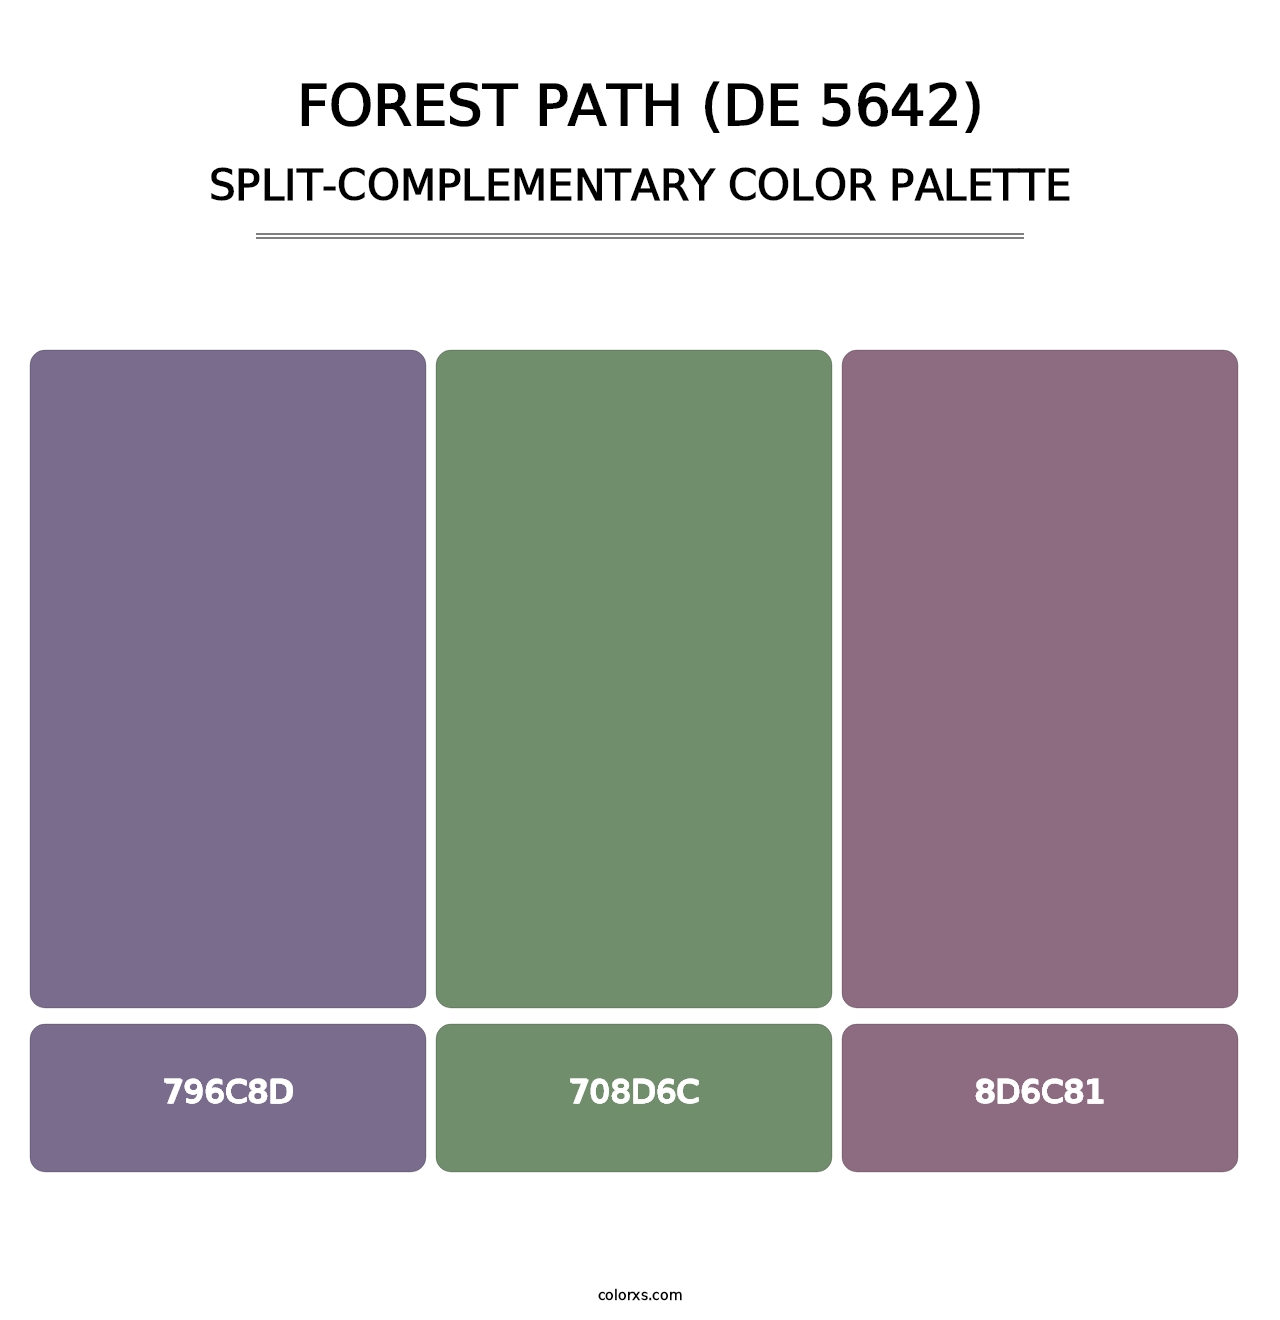 Forest Path (DE 5642) - Split-Complementary Color Palette